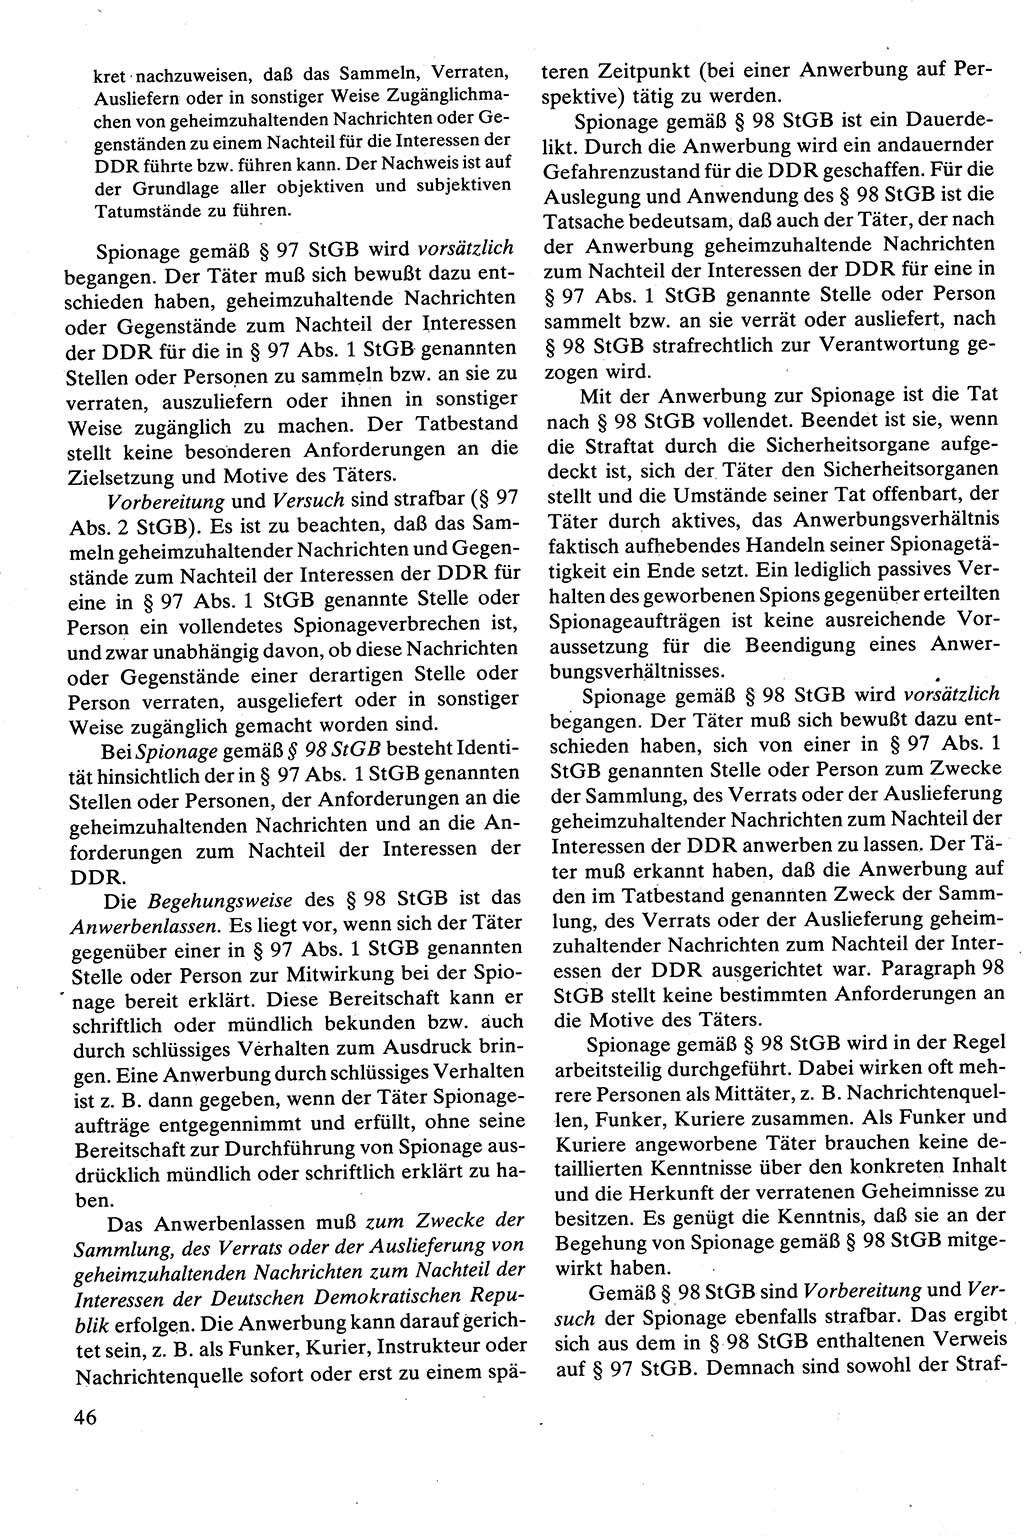 Strafrecht [Deutsche Demokratische Republik (DDR)], Besonderer Teil, Lehrbuch 1981, Seite 46 (Strafr. DDR BT Lb. 1981, S. 46)